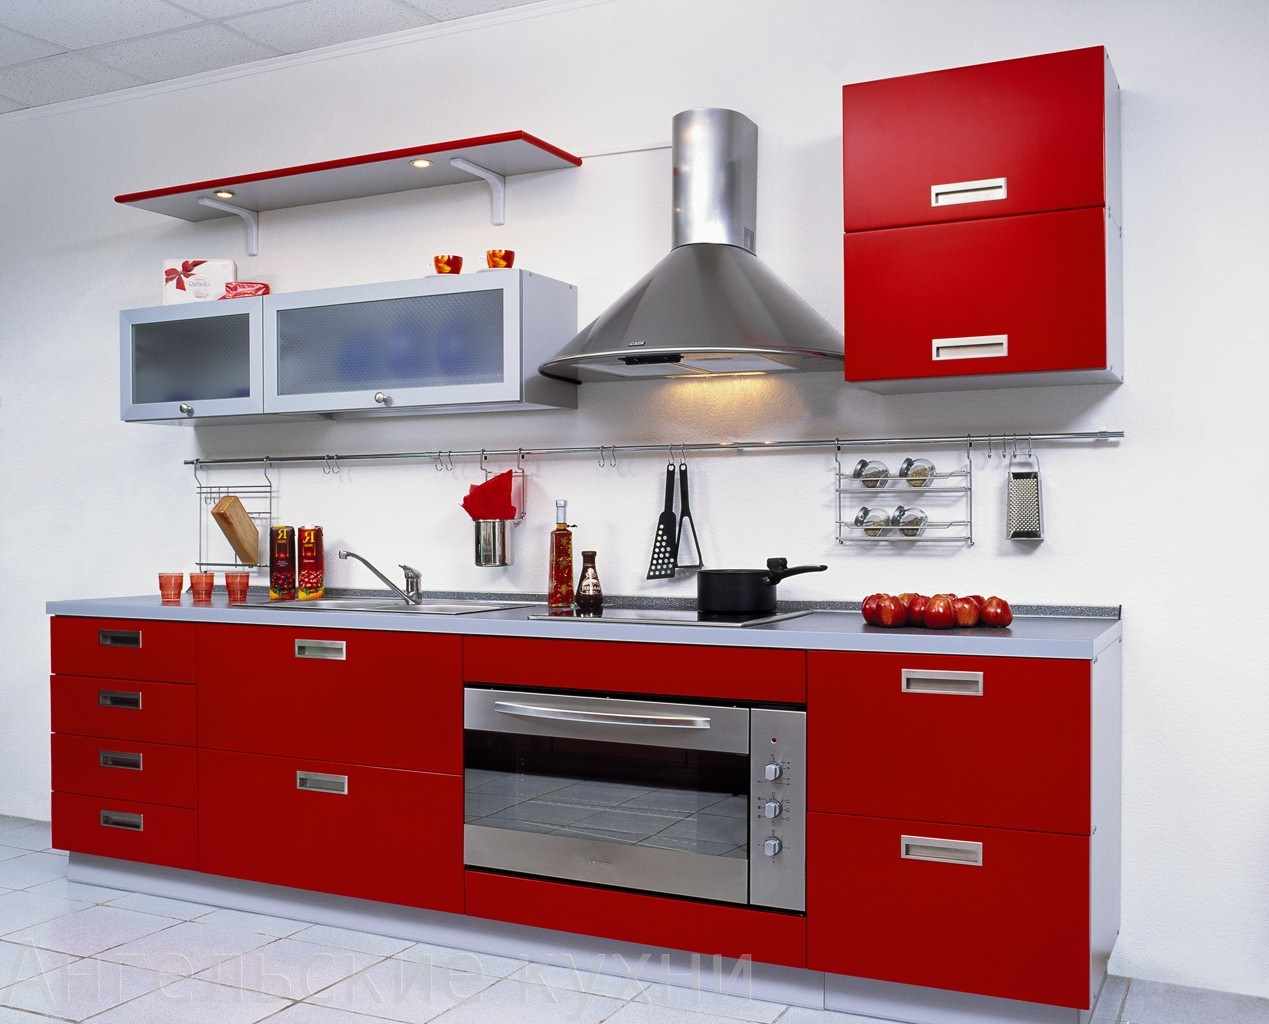 a vörös konyha szokatlan kialakításának példája